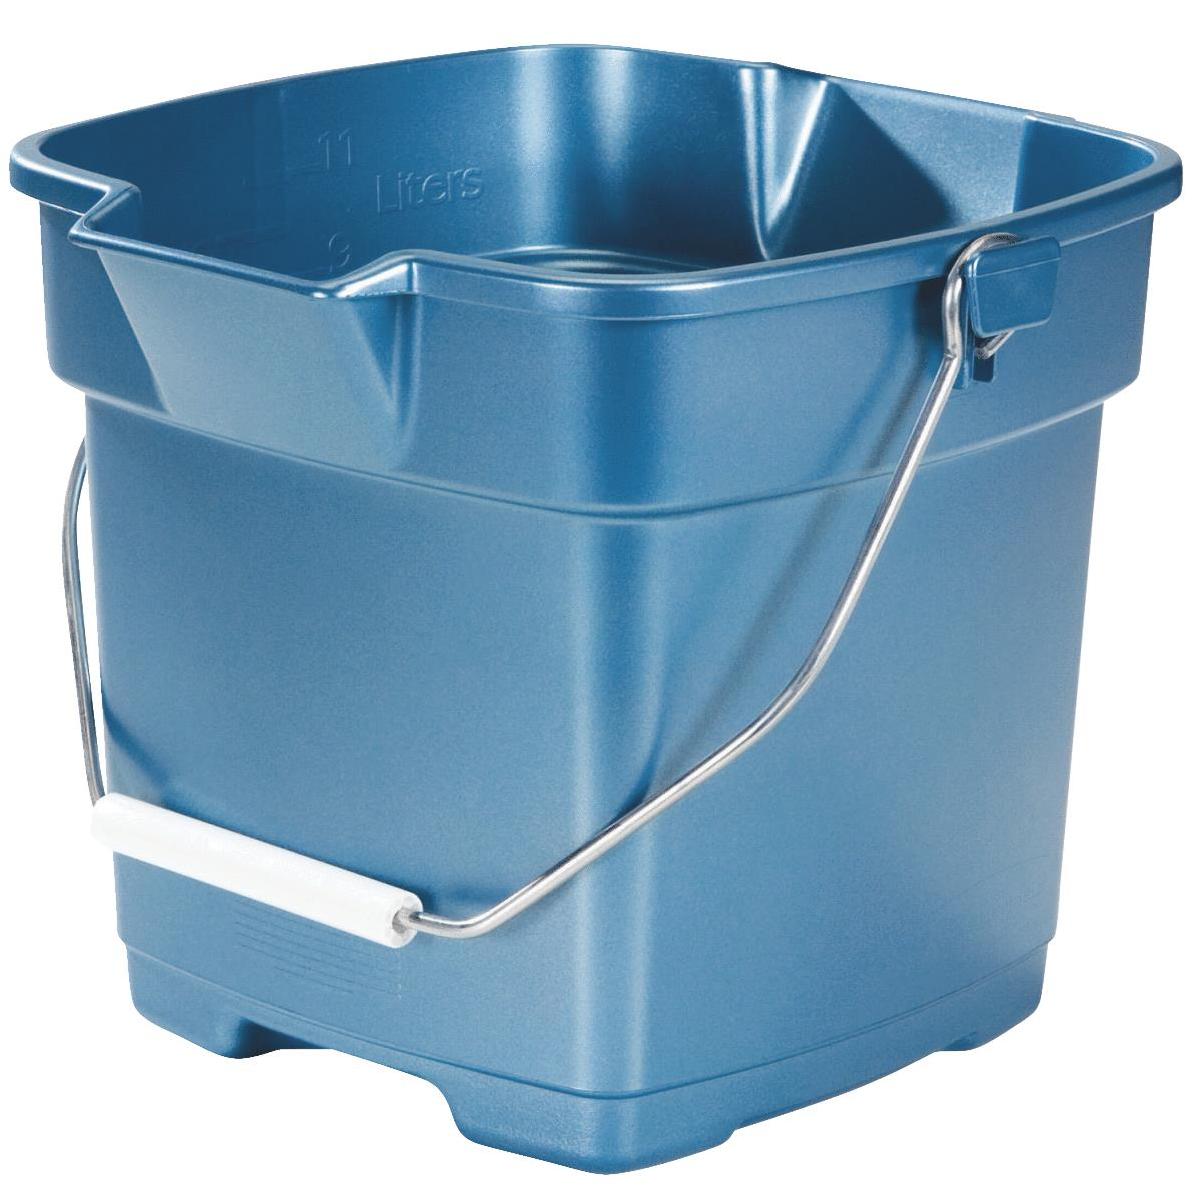 6 Gal. Heavy-duty Plastic Bucket | Unger Professional Heavy Blue Duty Gal  Mop